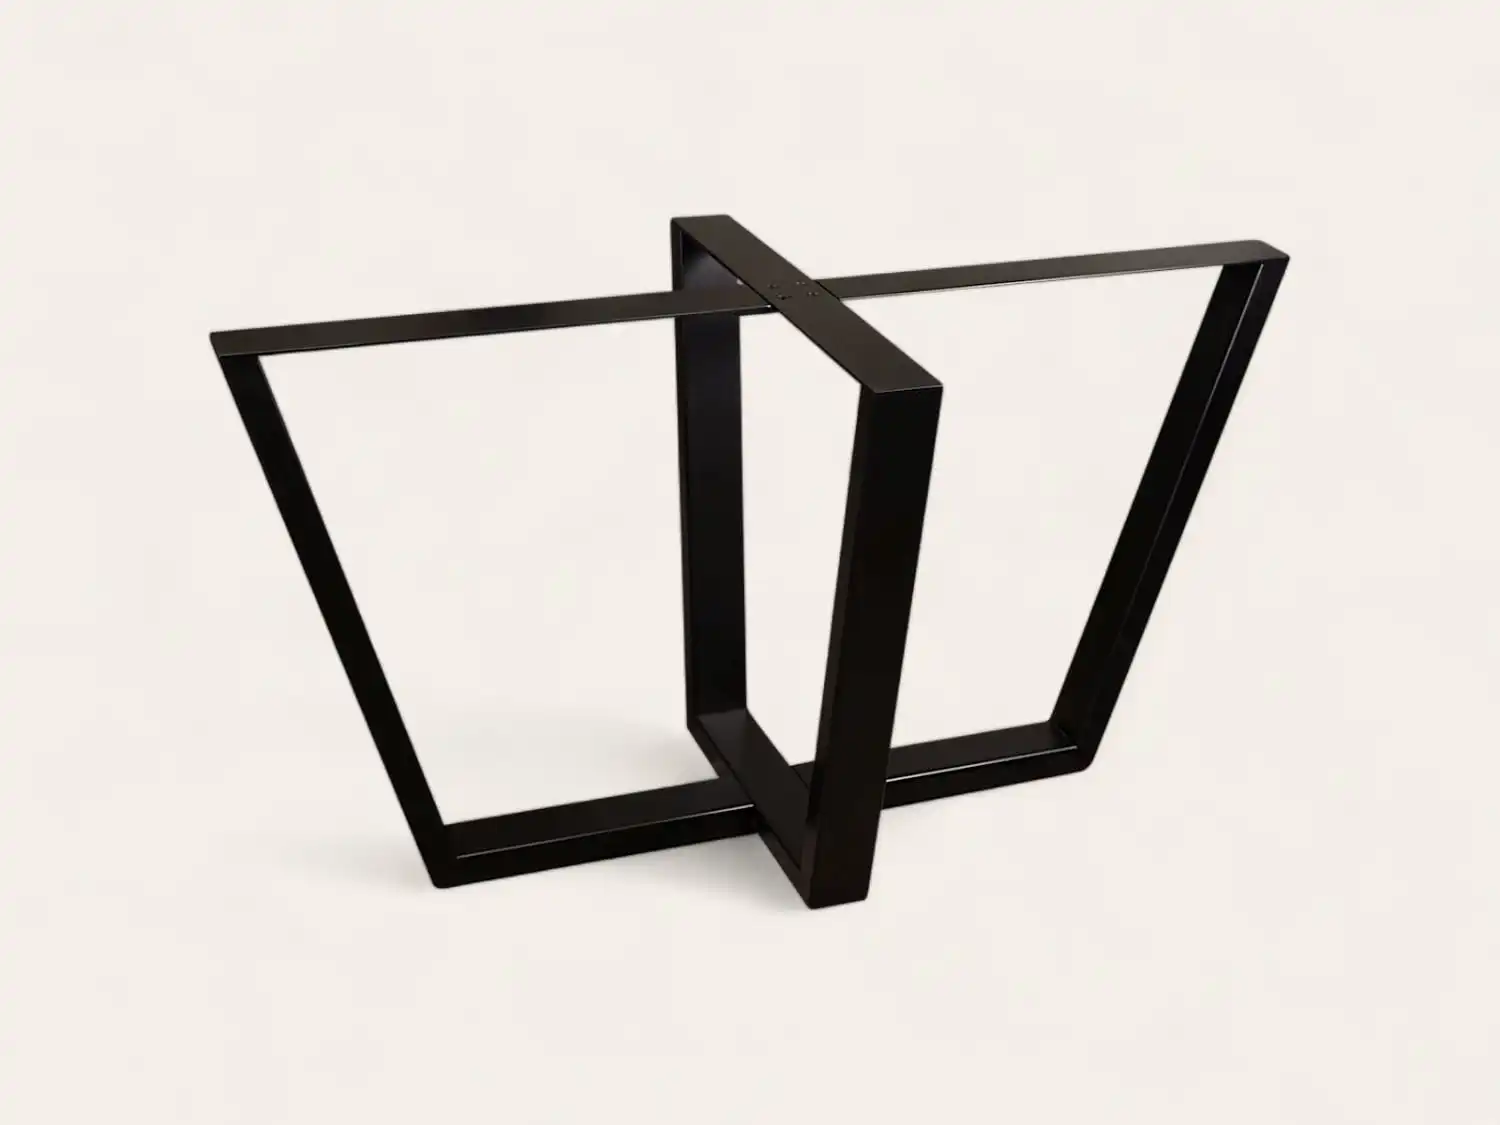 Un cadre de table en métal noir et angulaire avec un design en forme de V inversé.